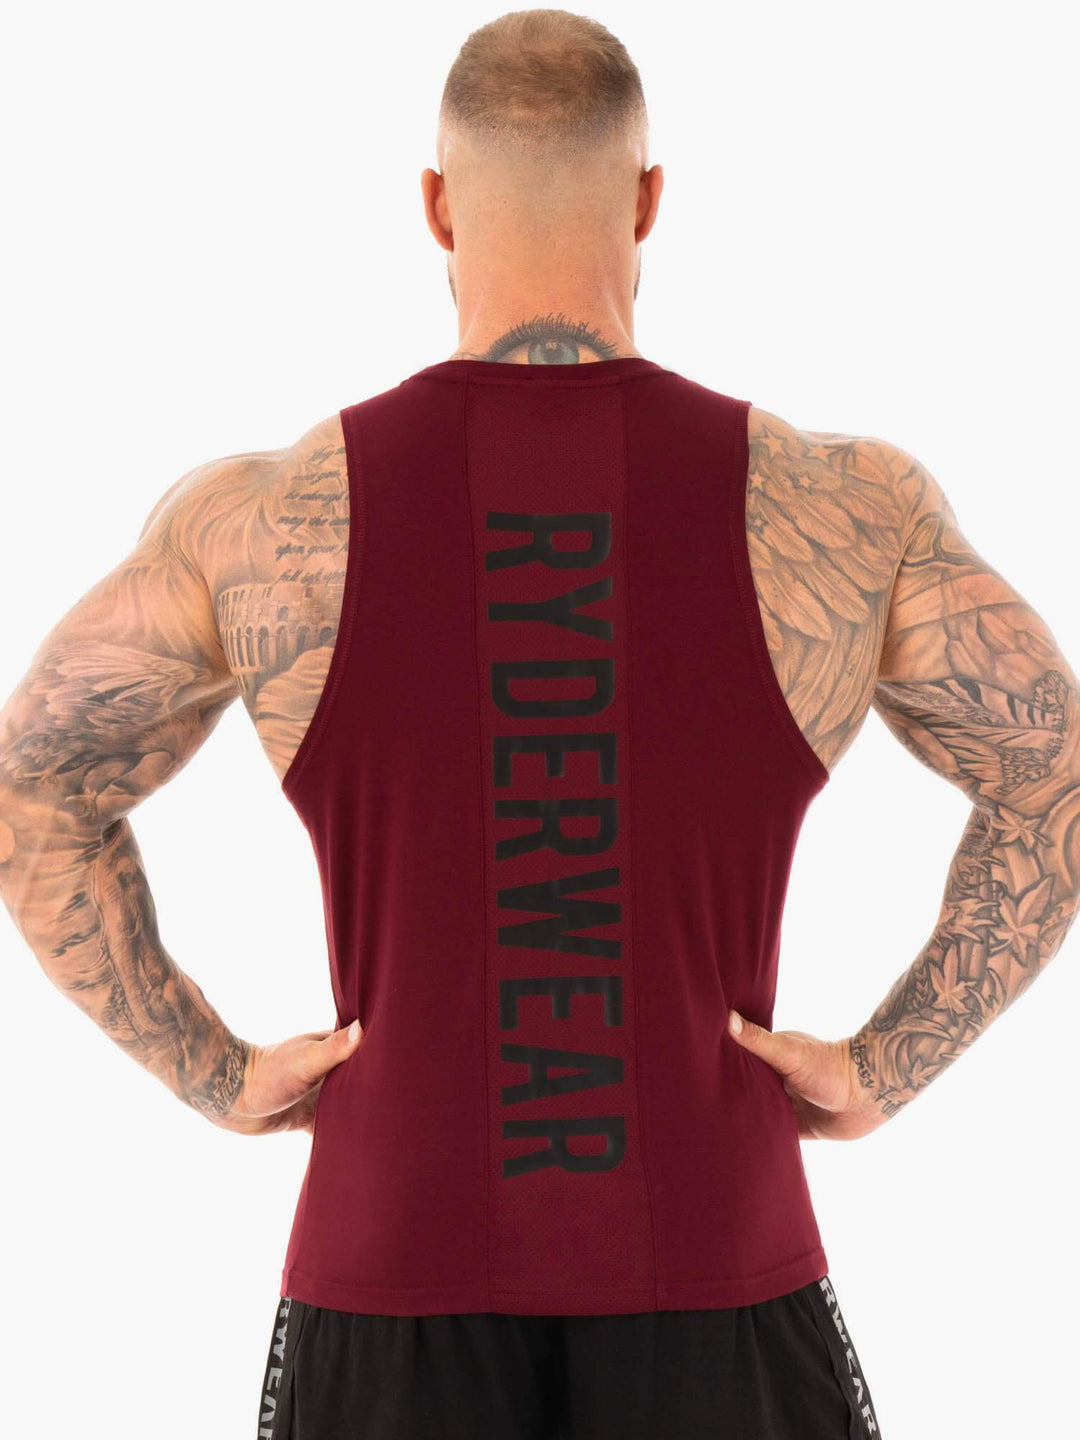 Athletic Cut Tank - Burgundy Clothing Ryderwear 